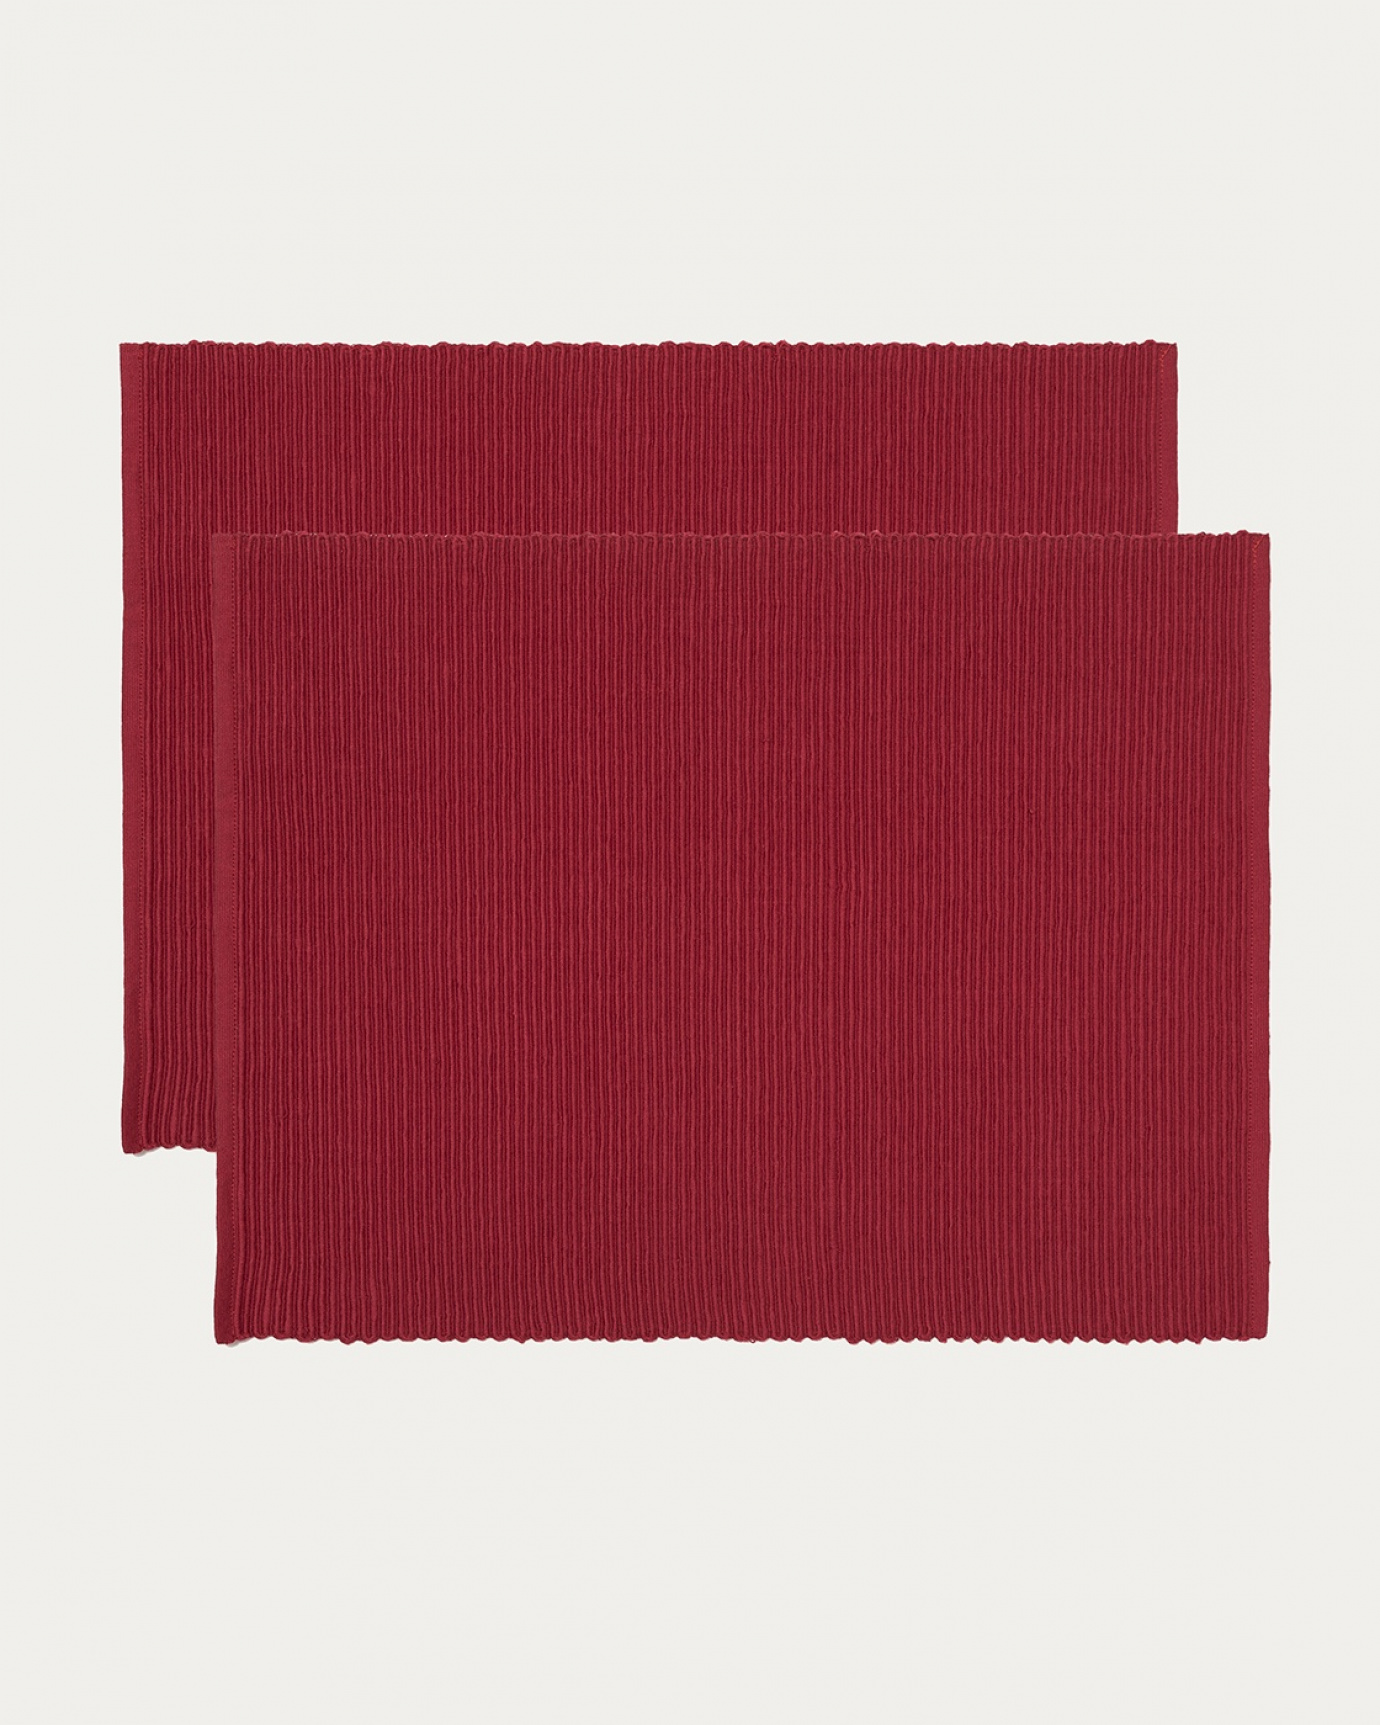 Produktbild röd UNI bordstablett av mjuk bomull i ribbad kvalité från LINUM DESIGN. Storlek 35x46 cm och säljs i 2-pack.